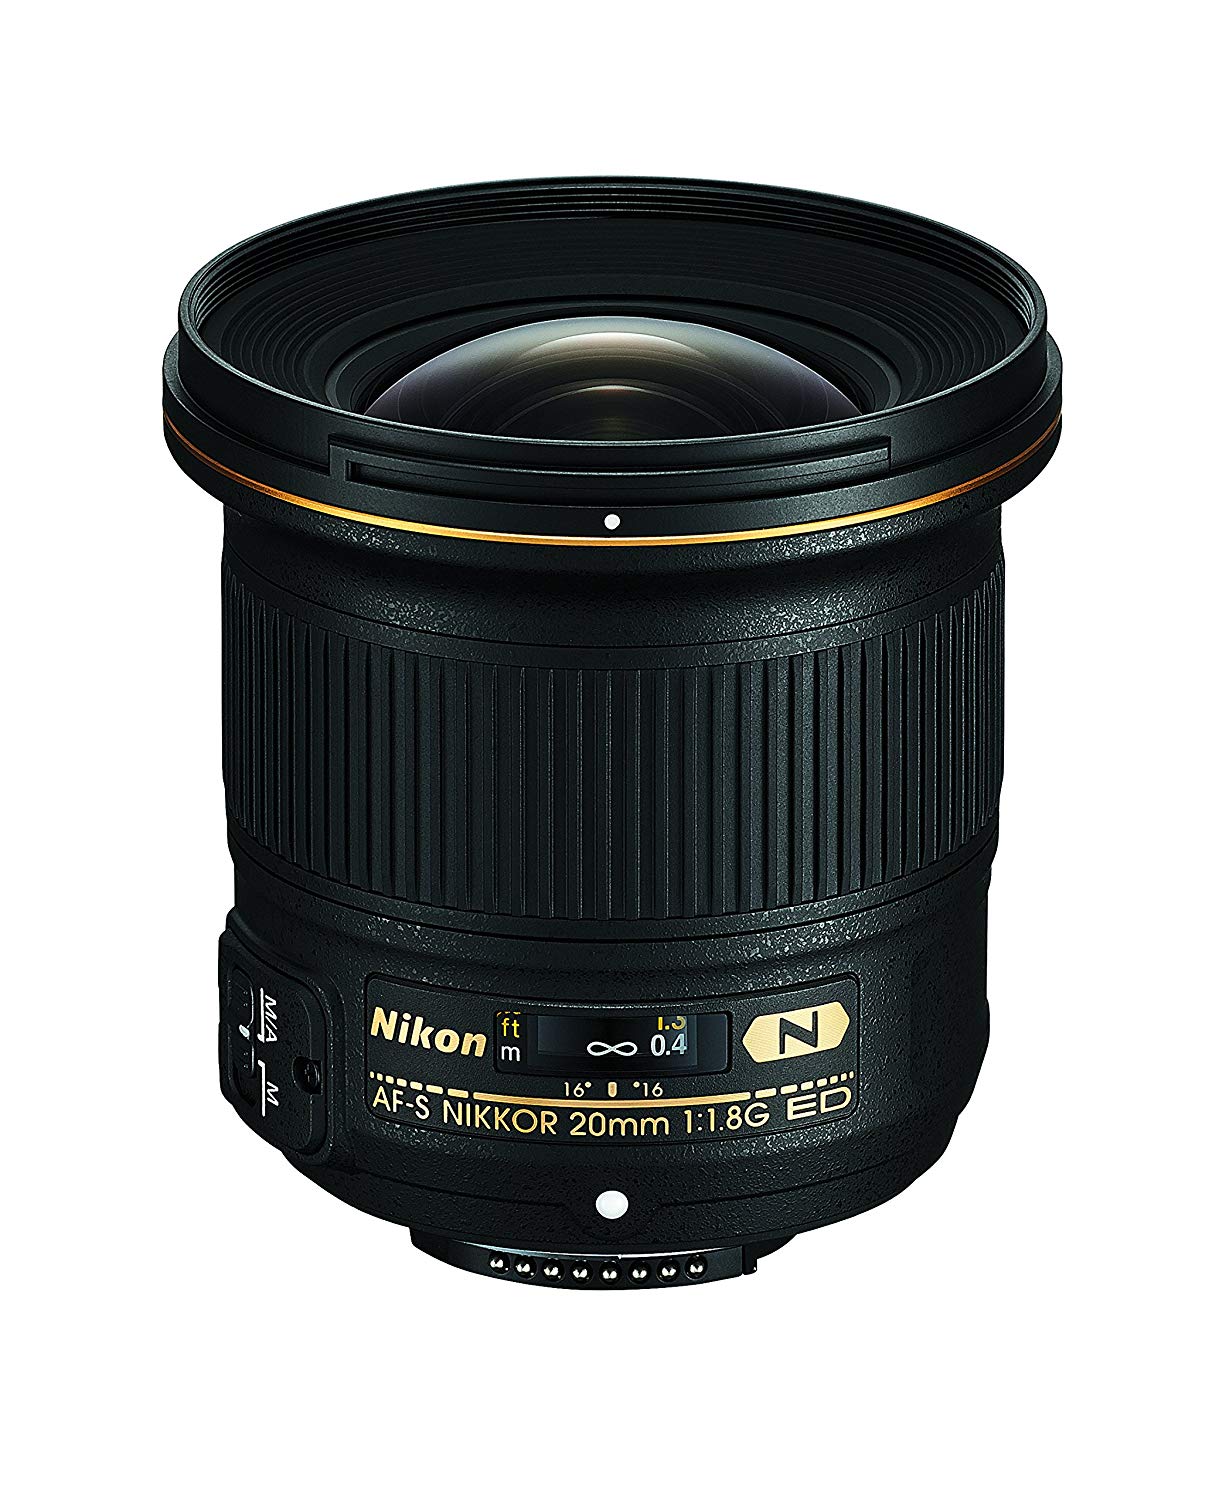 Nikon AF-S FX NIKKOR 20mm f/1.8G ED Fixed Lens with Aut...